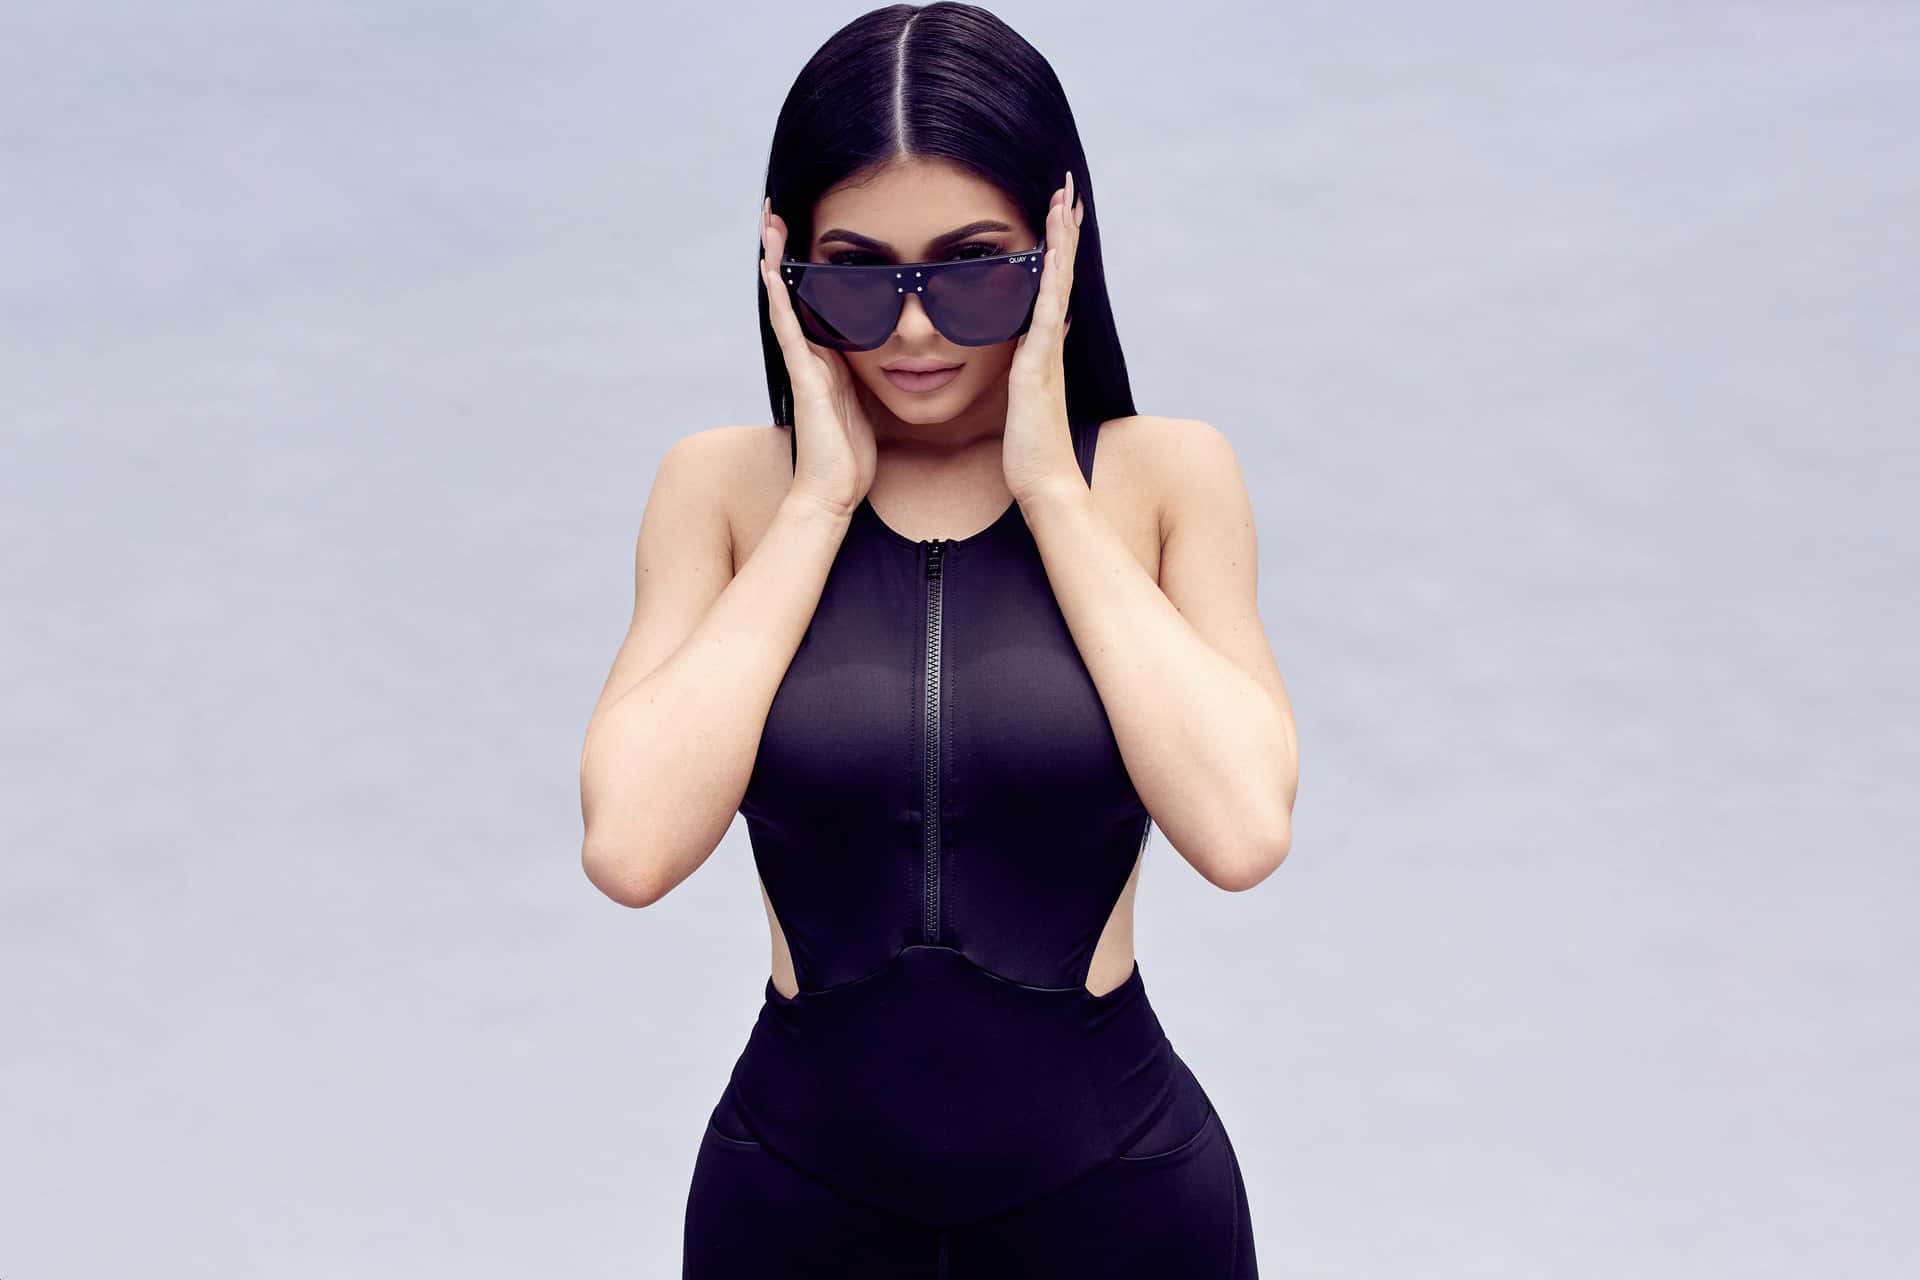 Kyliejenner Irradia Beleza Em Sua Sessão De Fotos De Resolução 4k. Papel de Parede